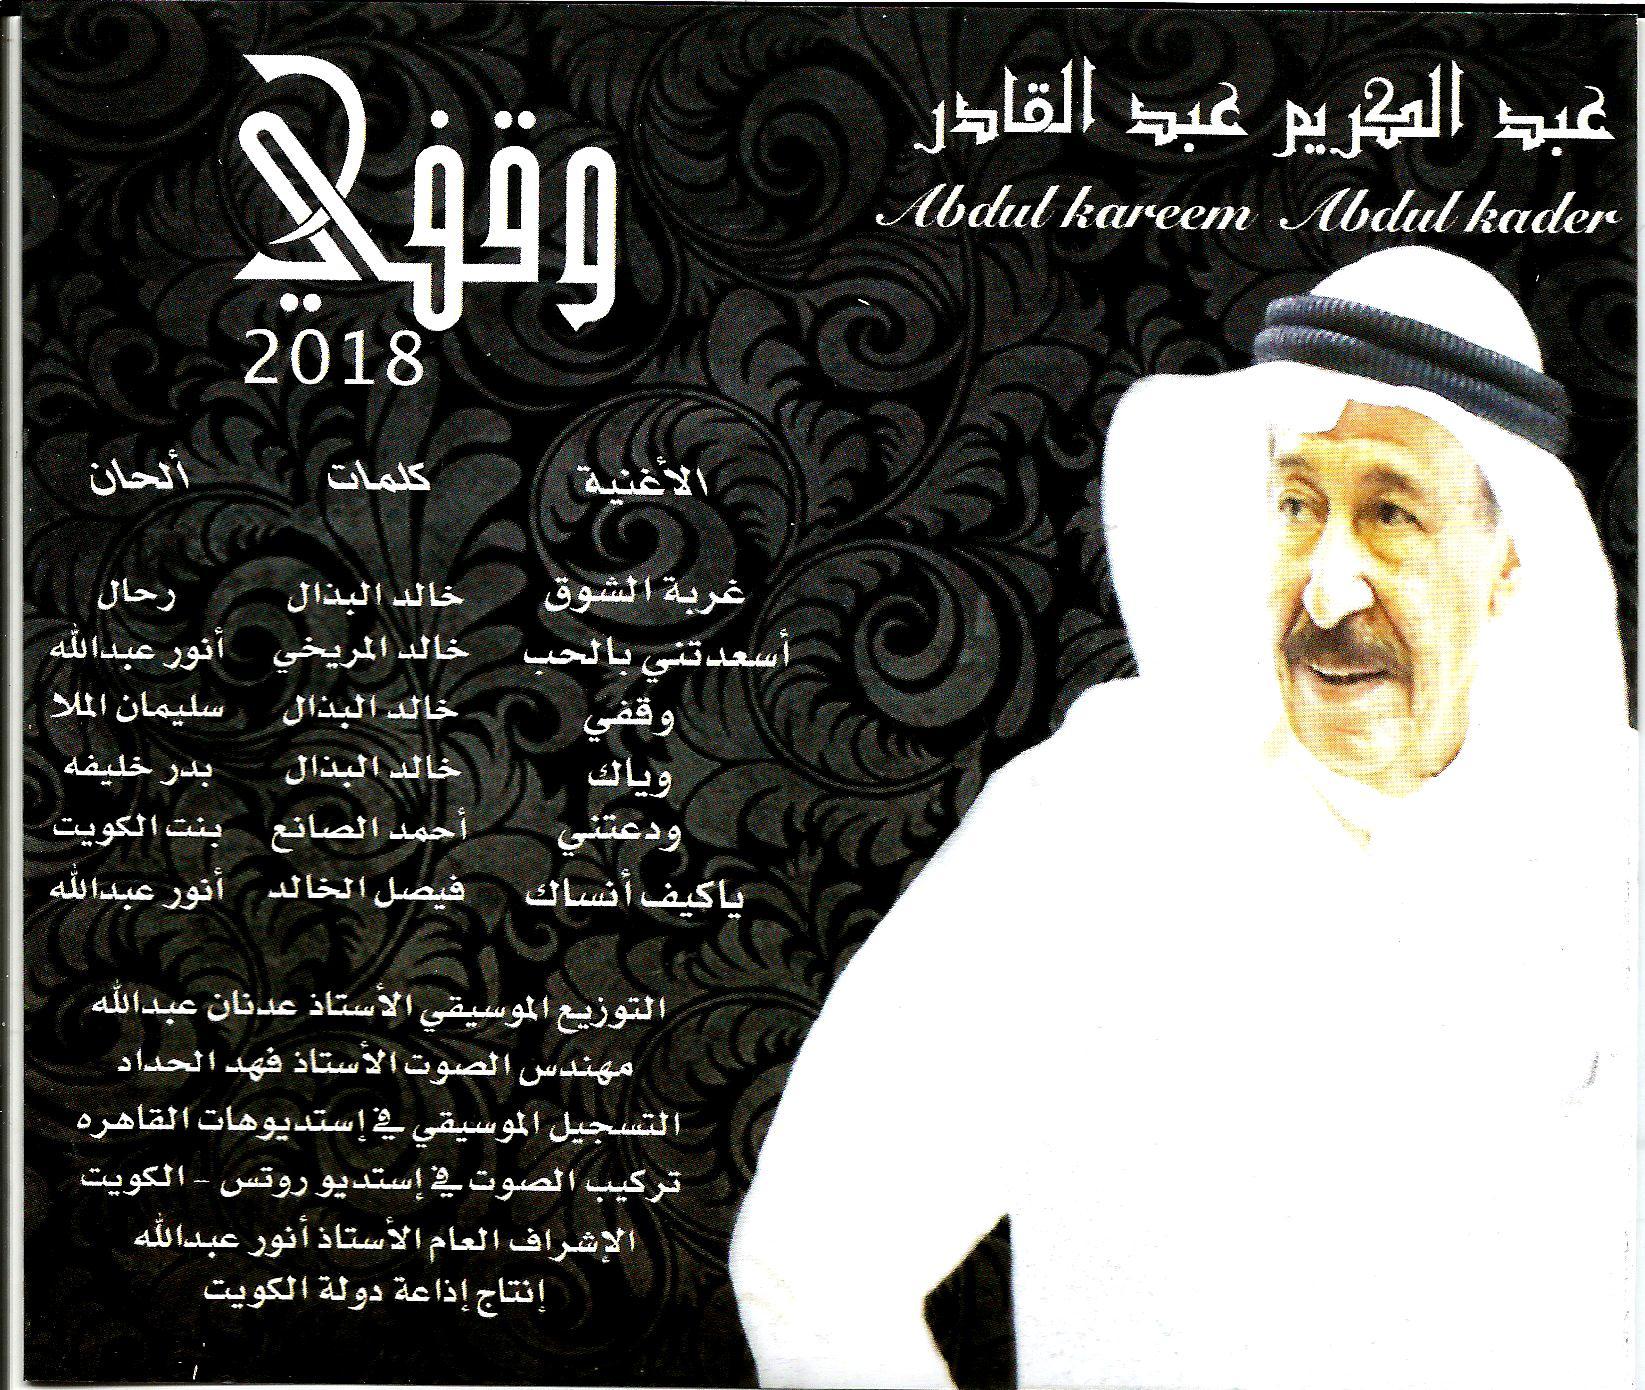 الفنان عبدالكريم عبدالقادر الصفحة 17 منتدى سماعي للطرب العربي الأصيل